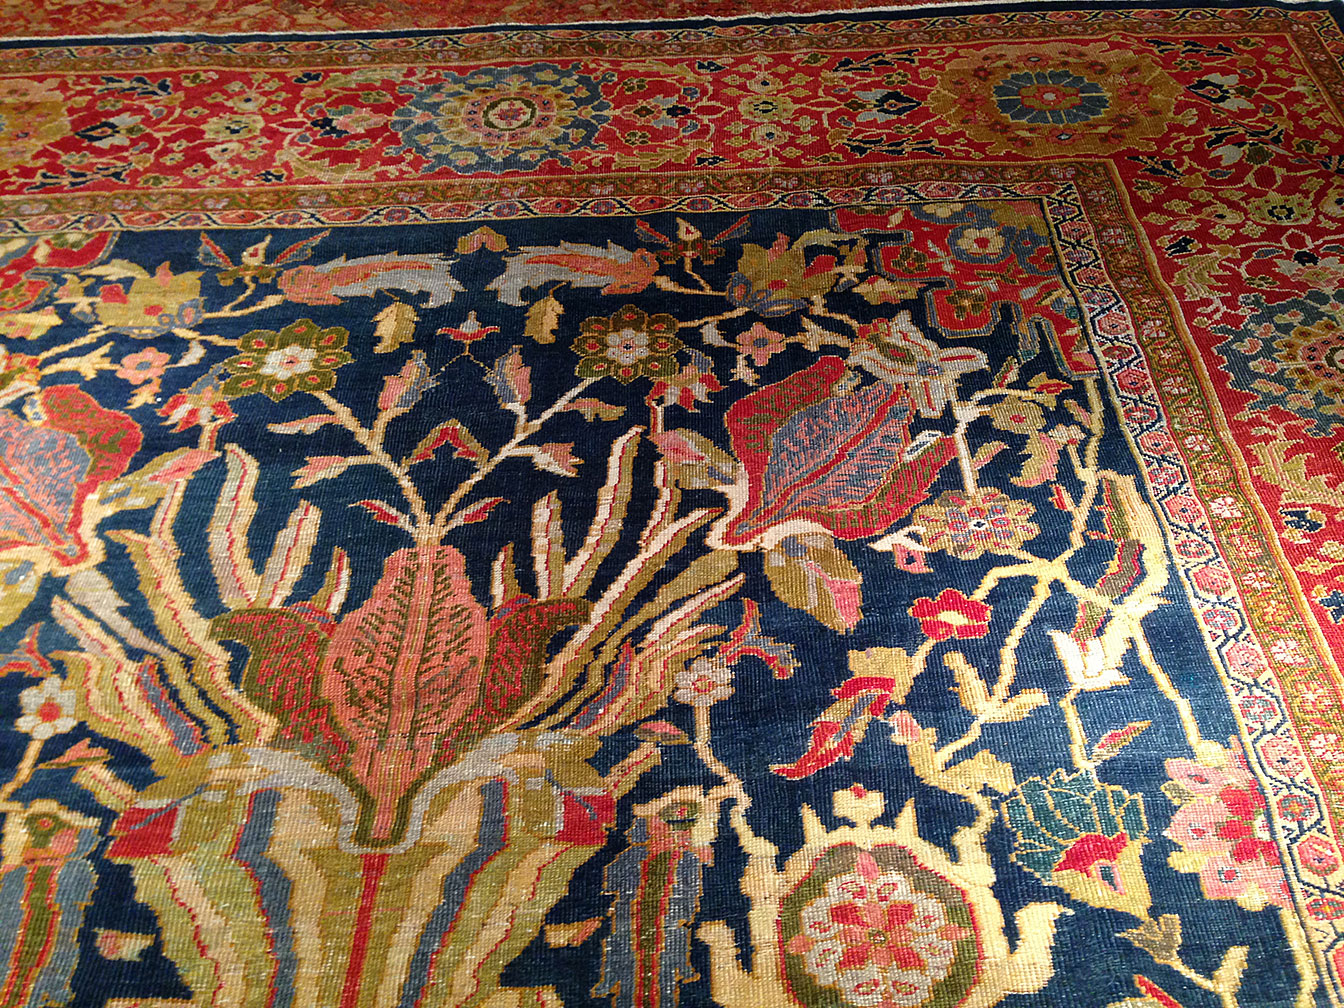 Antique sultan abad Carpet - # 9326